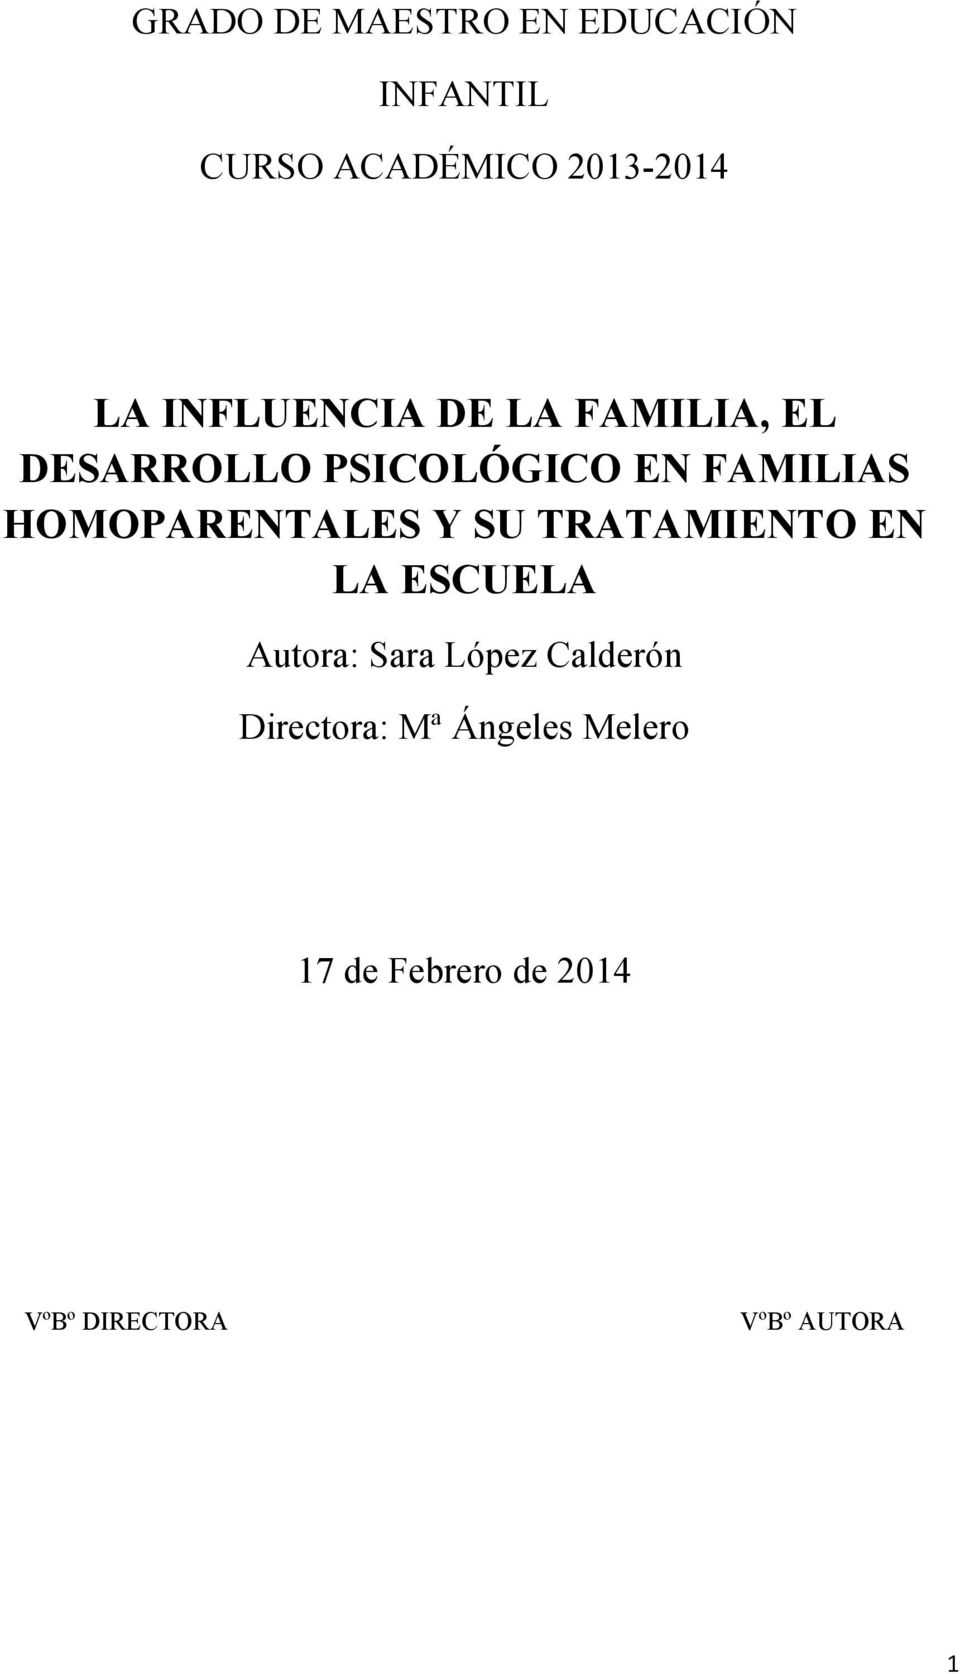 HOMOPARENTALES Y SU TRATAMIENTO EN LA ESCUELA Autora: Sara López